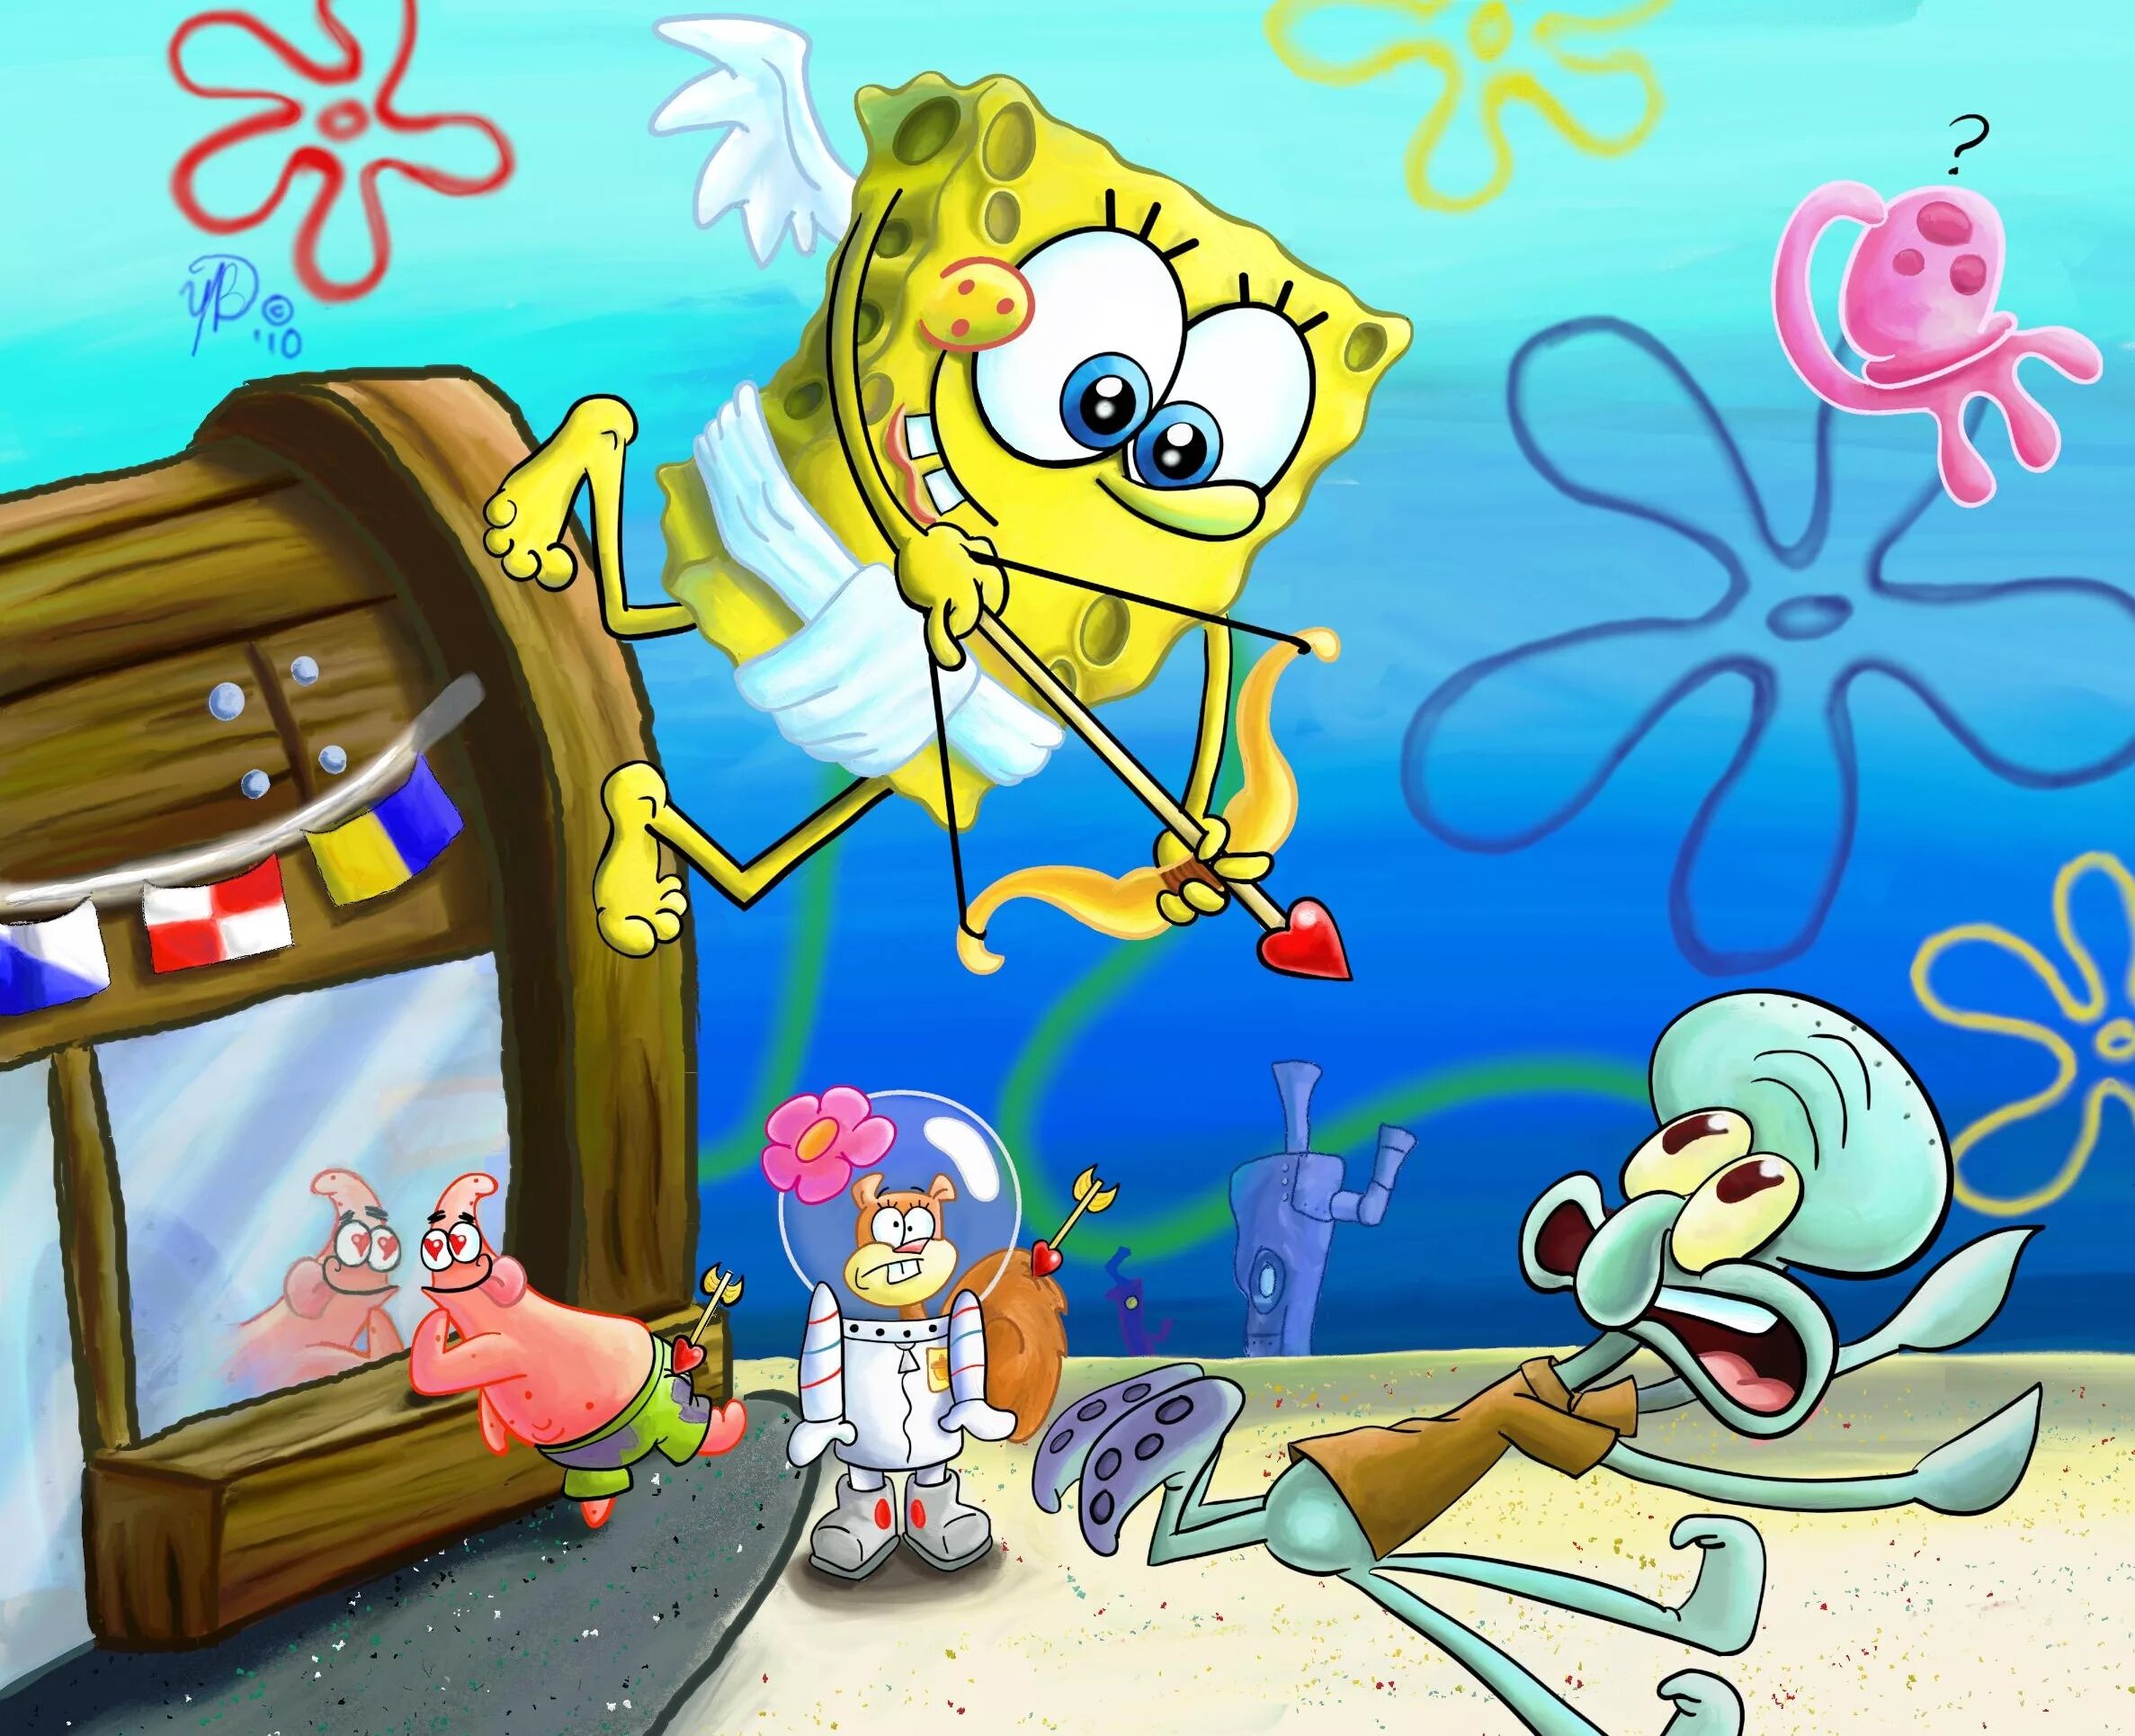 Spongebob tango. Спанч Боб Спанч Боб. Губка Боб Сквидвард и Сэнди. Спанч Боб и Патрик и Сквидвард и Сэнди. Губка Патрик Сэнди и Сквидвард.